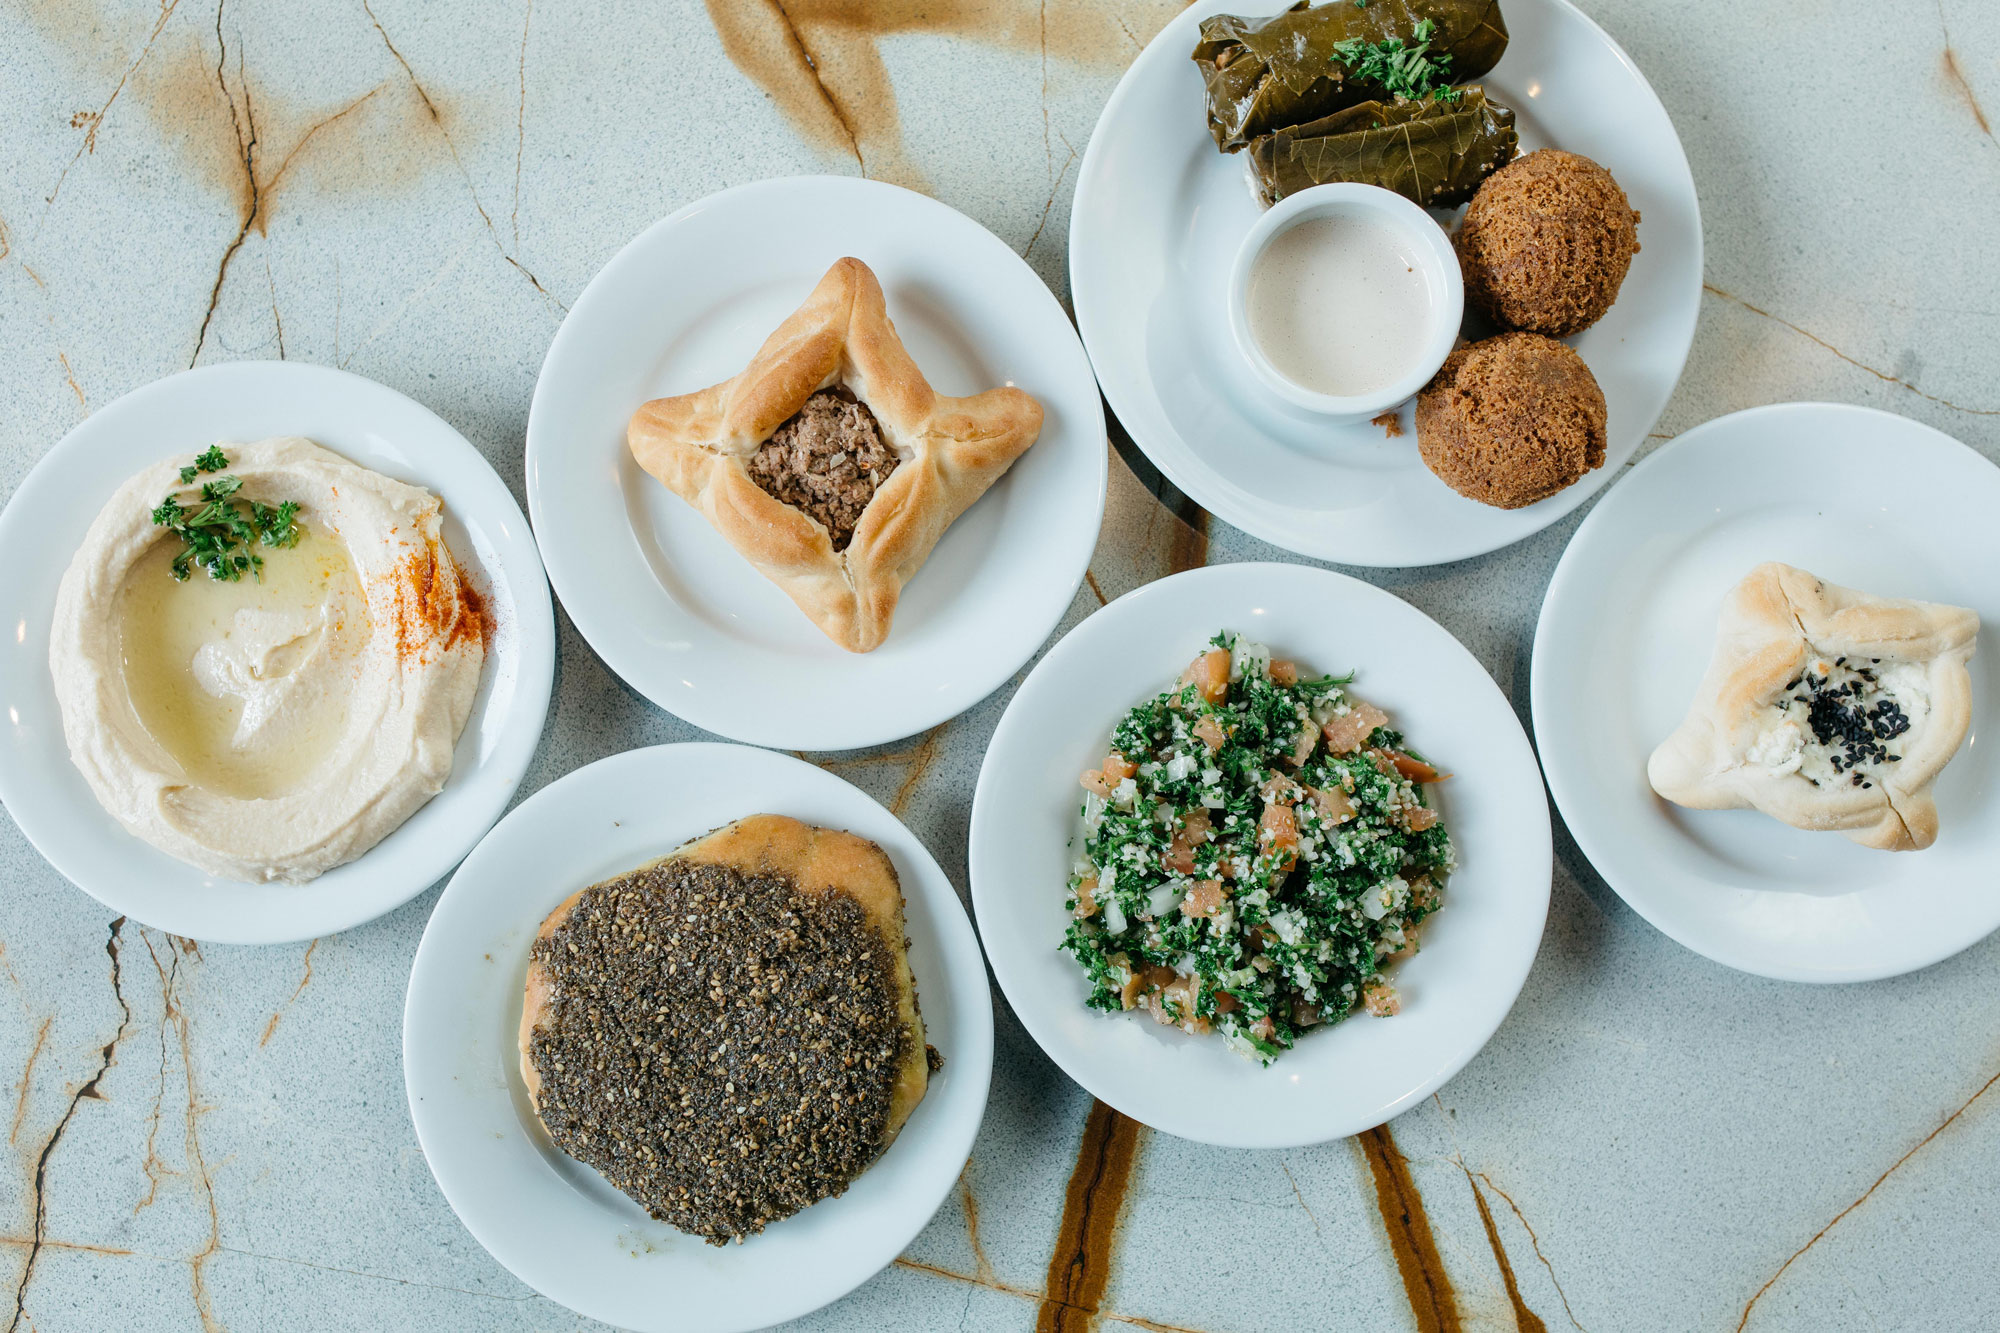 Karam Lebanese Deli and Catering